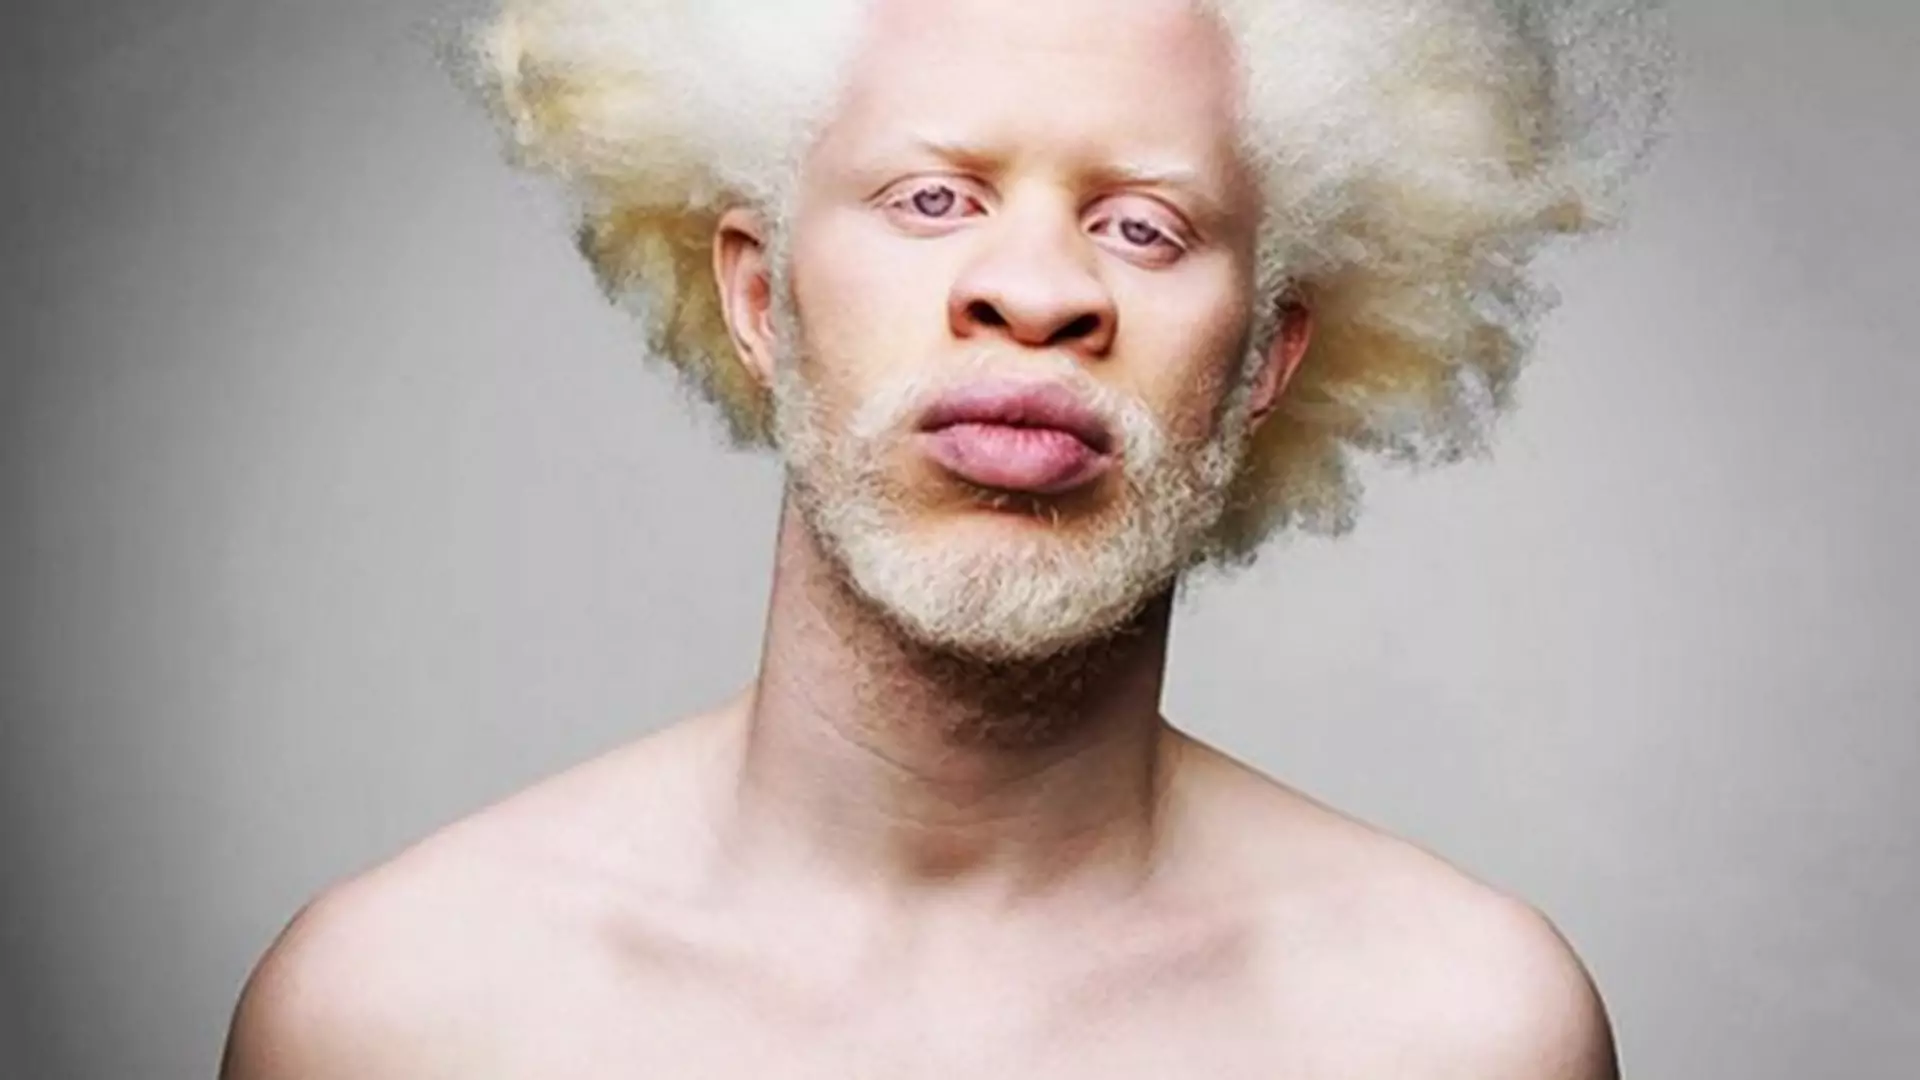 9 modeli i modelek albinosów, którzy naprawdę robią wrażenie